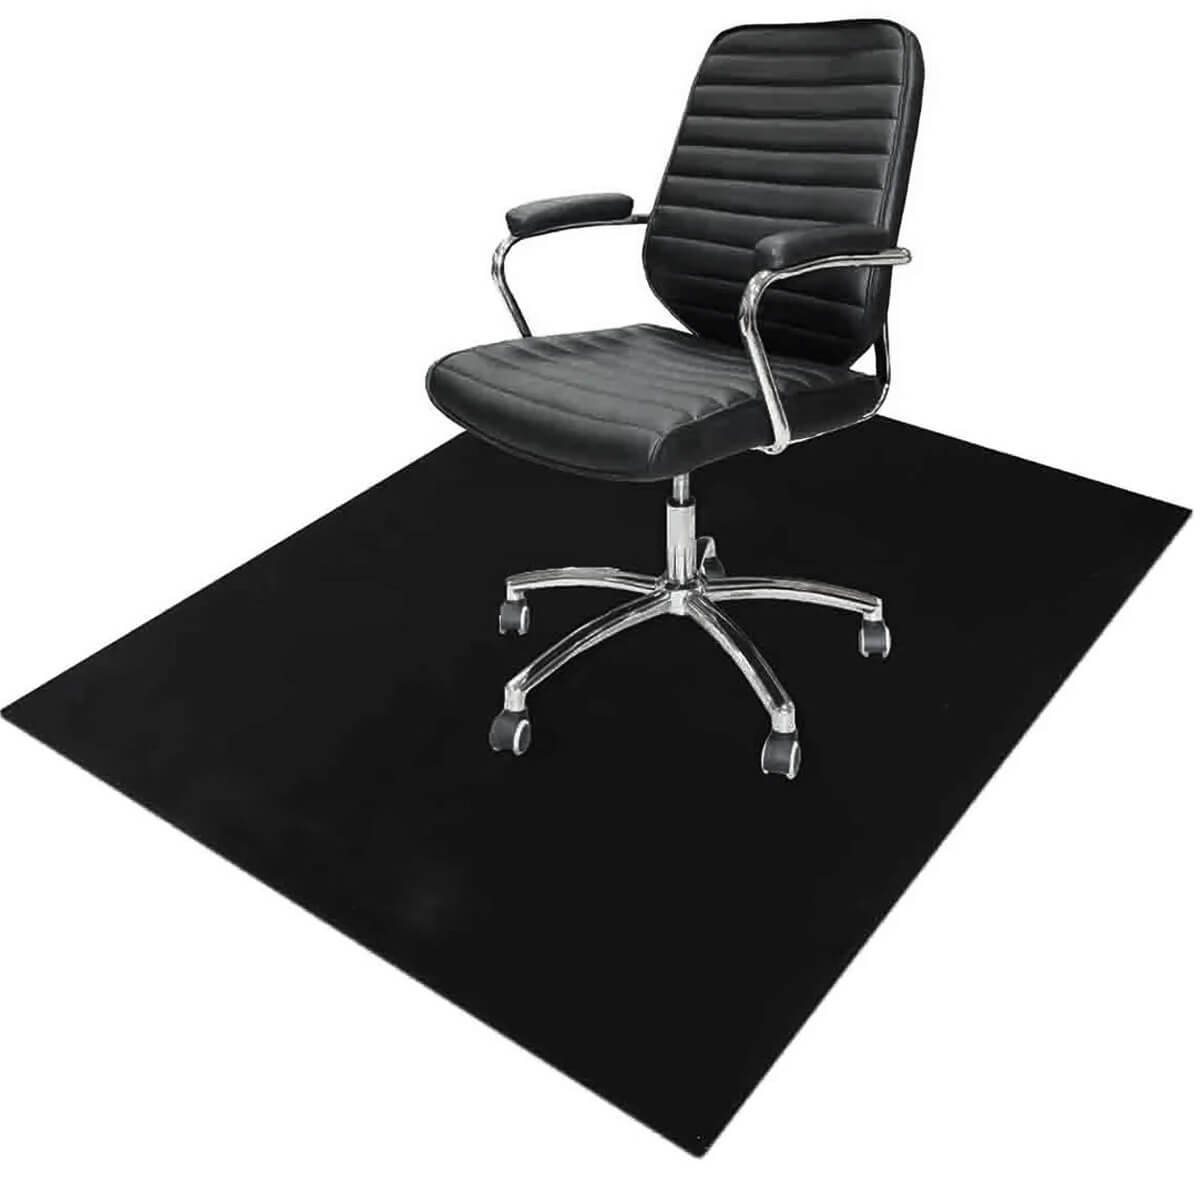 Tapete Protetor de Piso para Cadeira Escritório 100x120cm Preto Protepiso Flexível Dello - 1